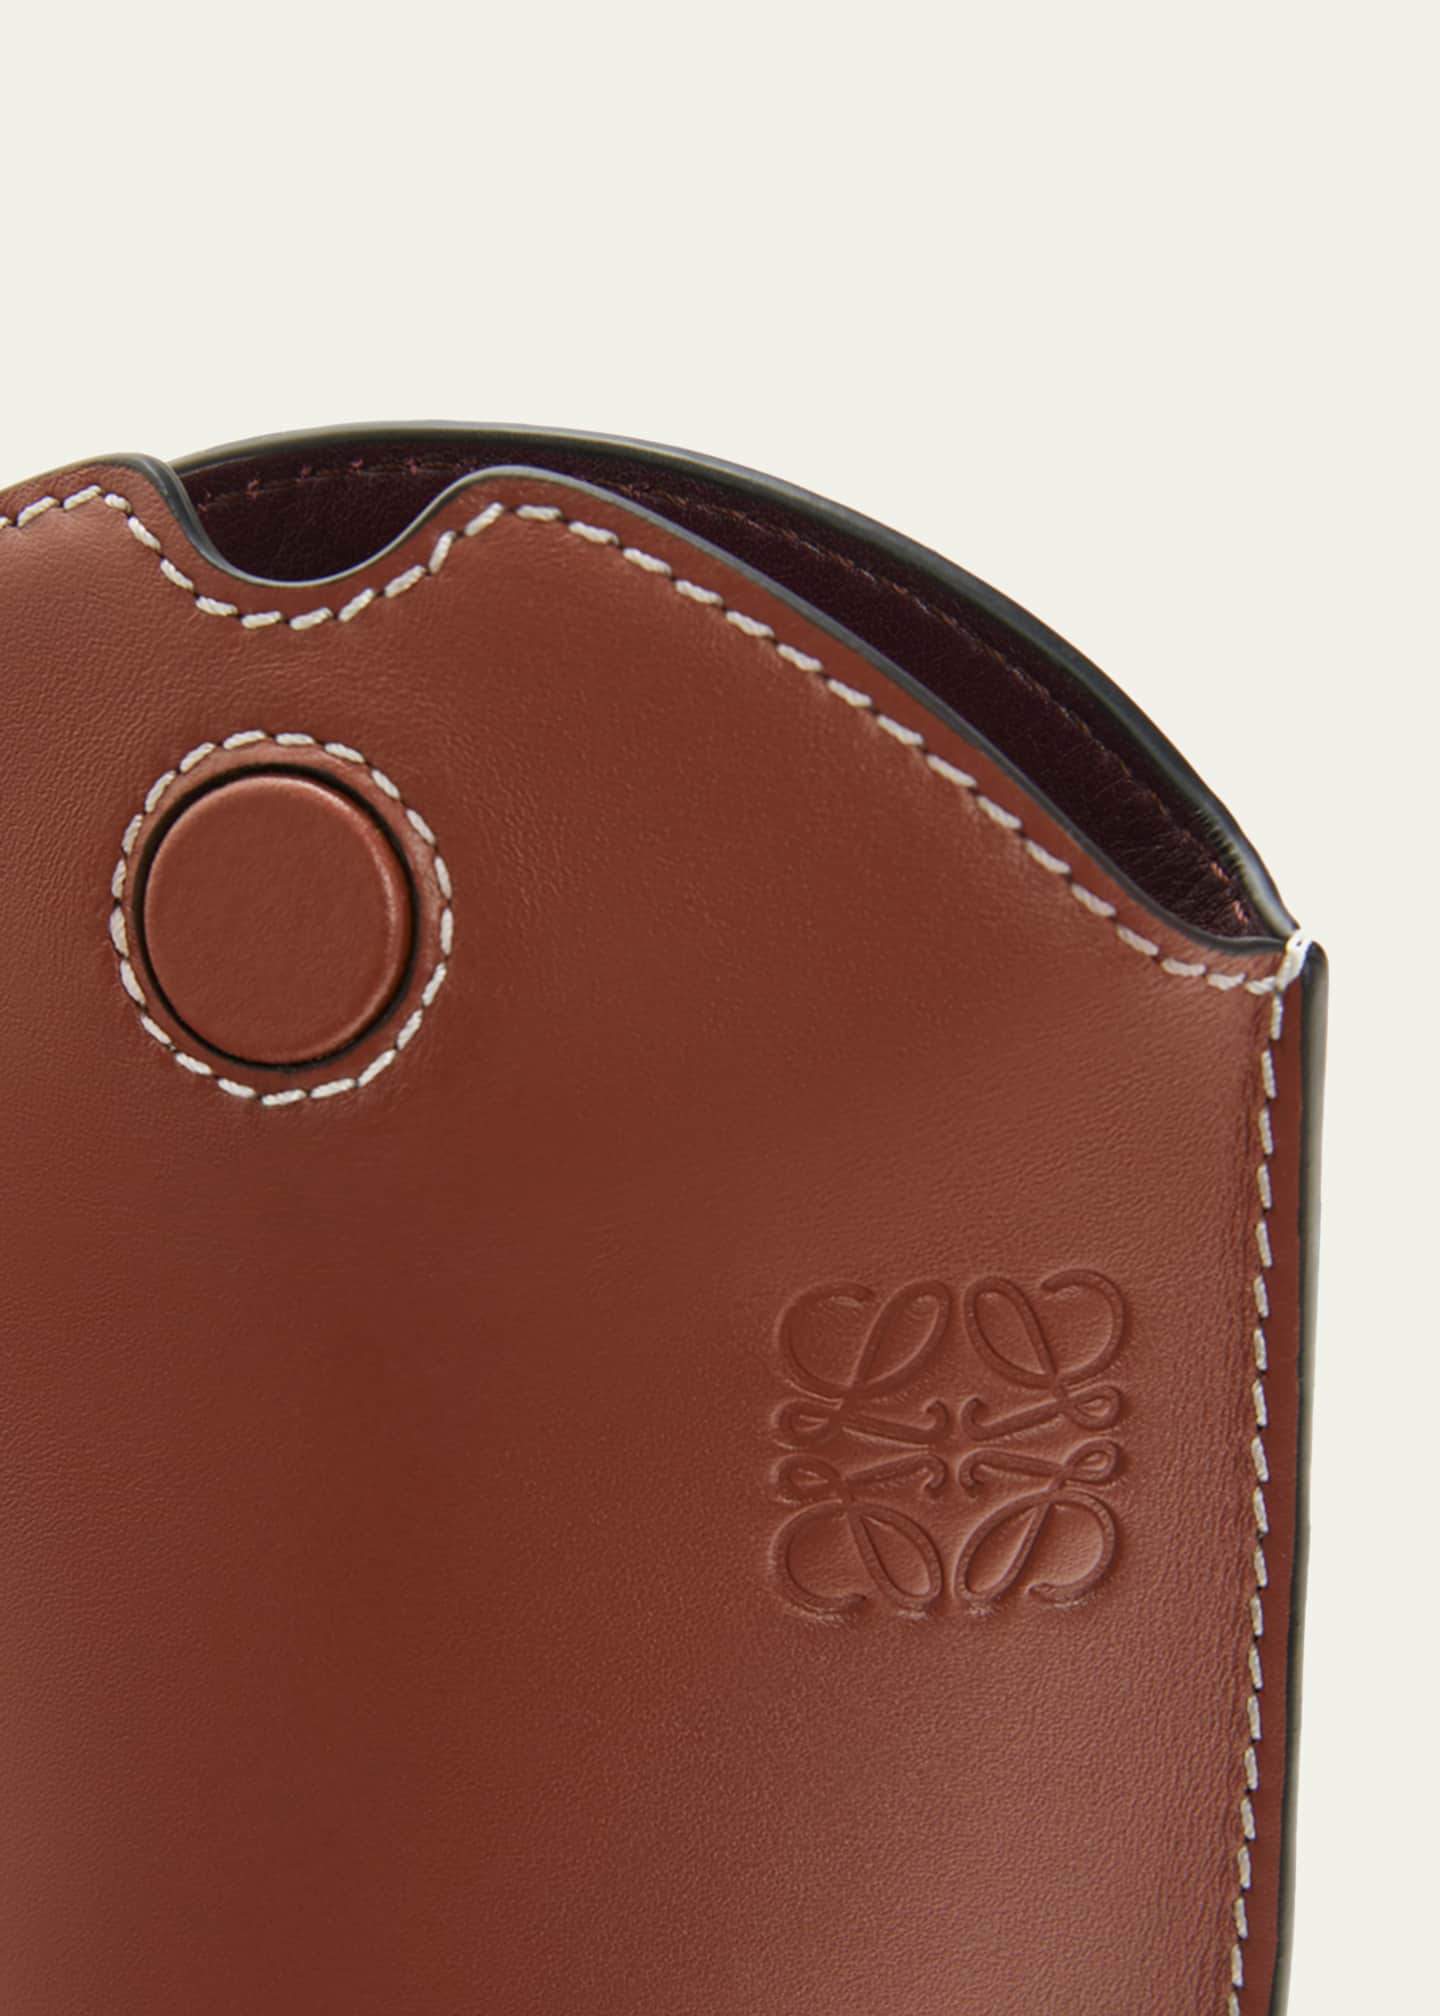 Gate bucket leather handbag Loewe Black in Leather - 31939269